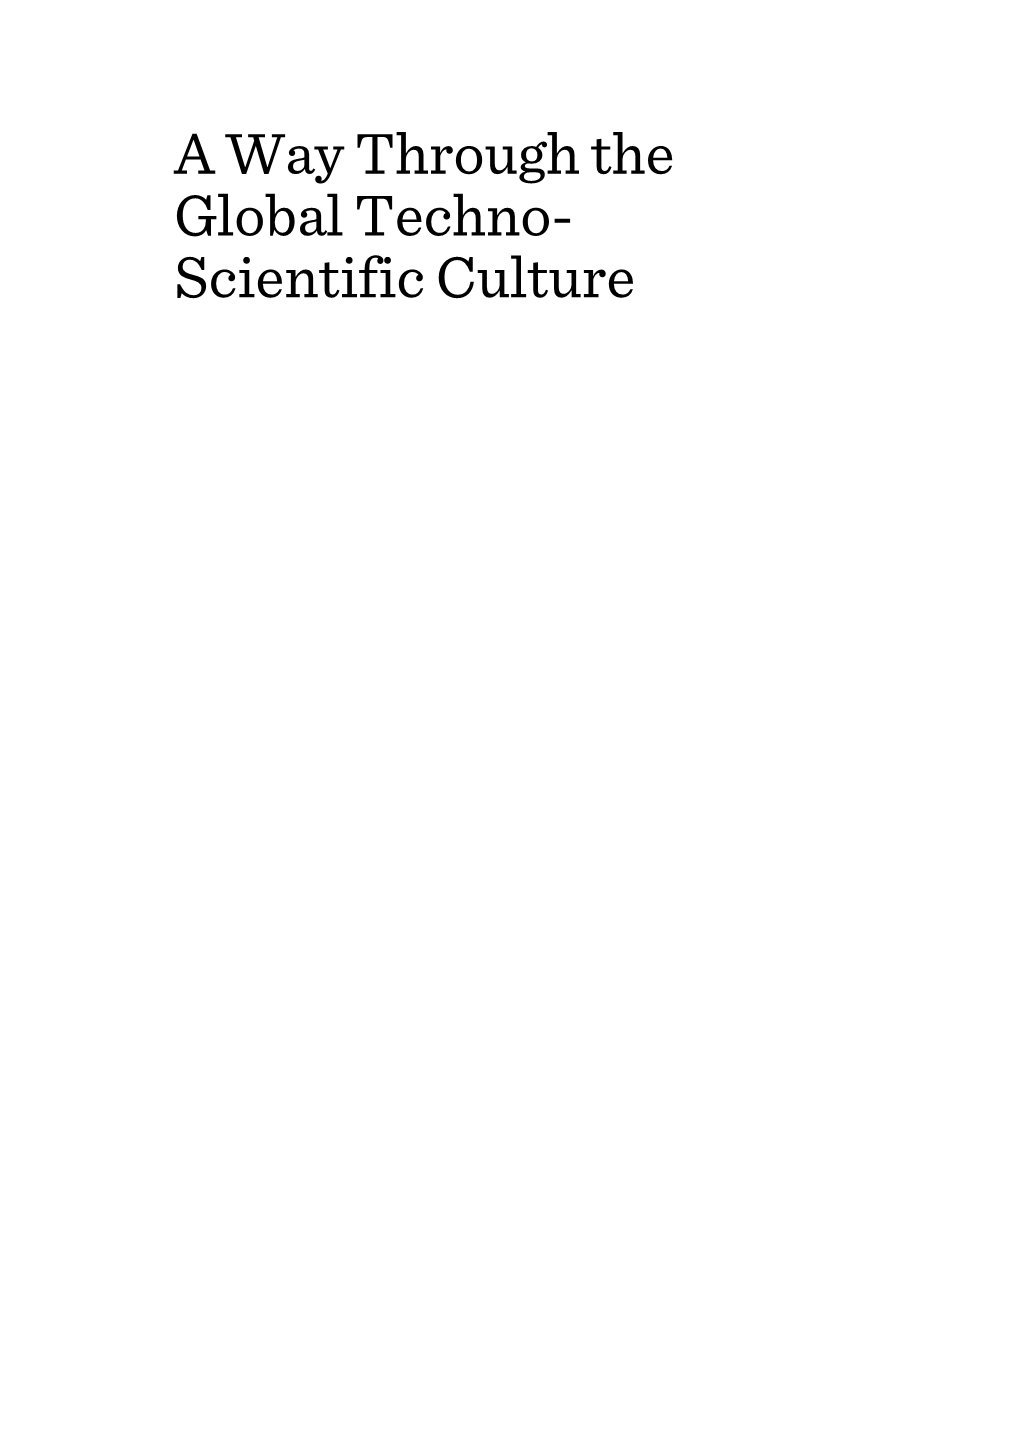 Scientific Culture